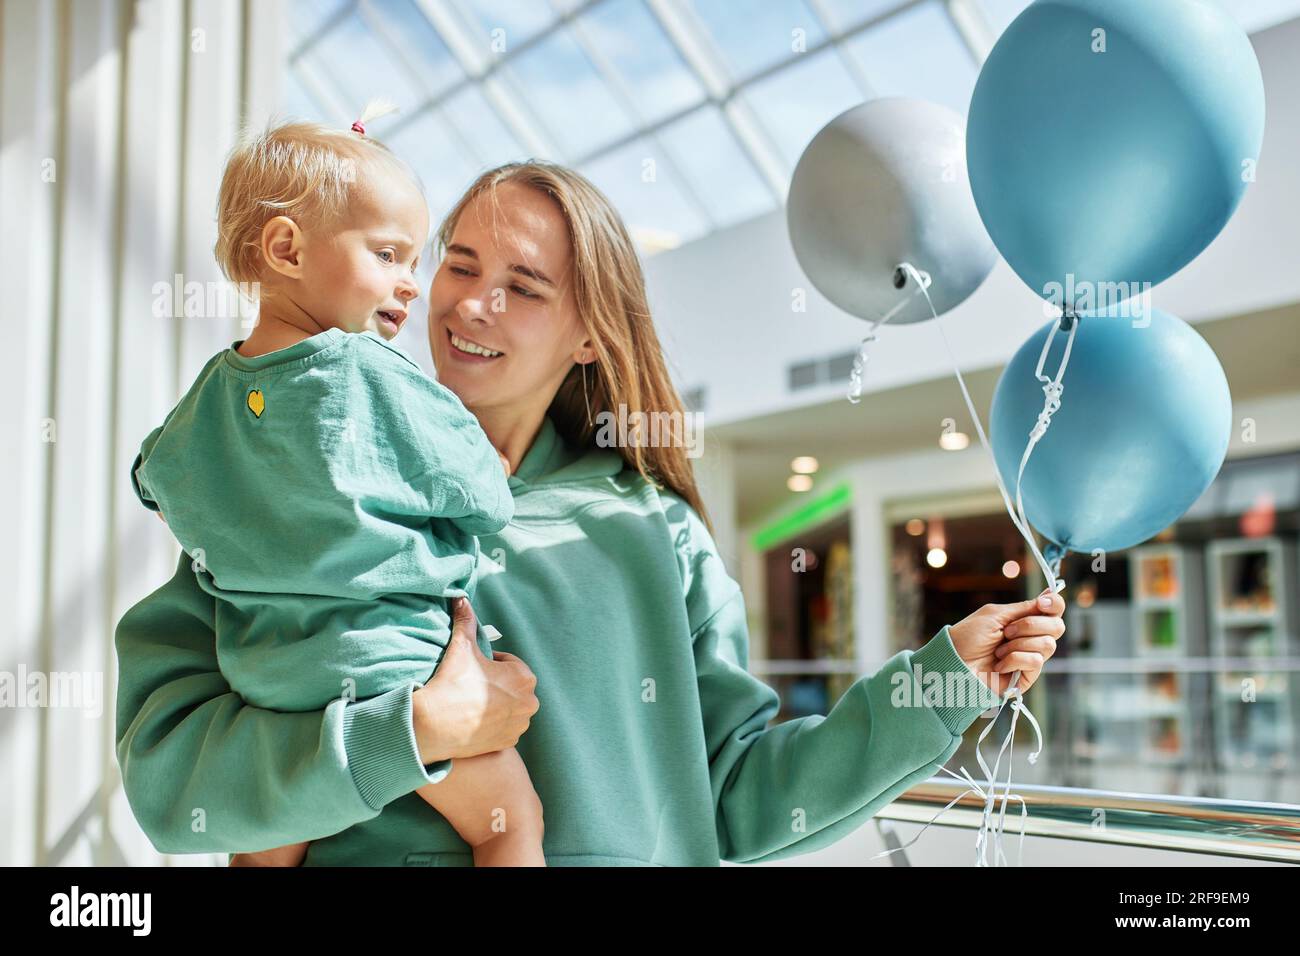 Portrait de mère heureuse avec bébé dans ses bras et ballons colorés. Jeune jolie maman et sa petite fille dans les mêmes vêtements verts marchent autour de la maman Banque D'Images